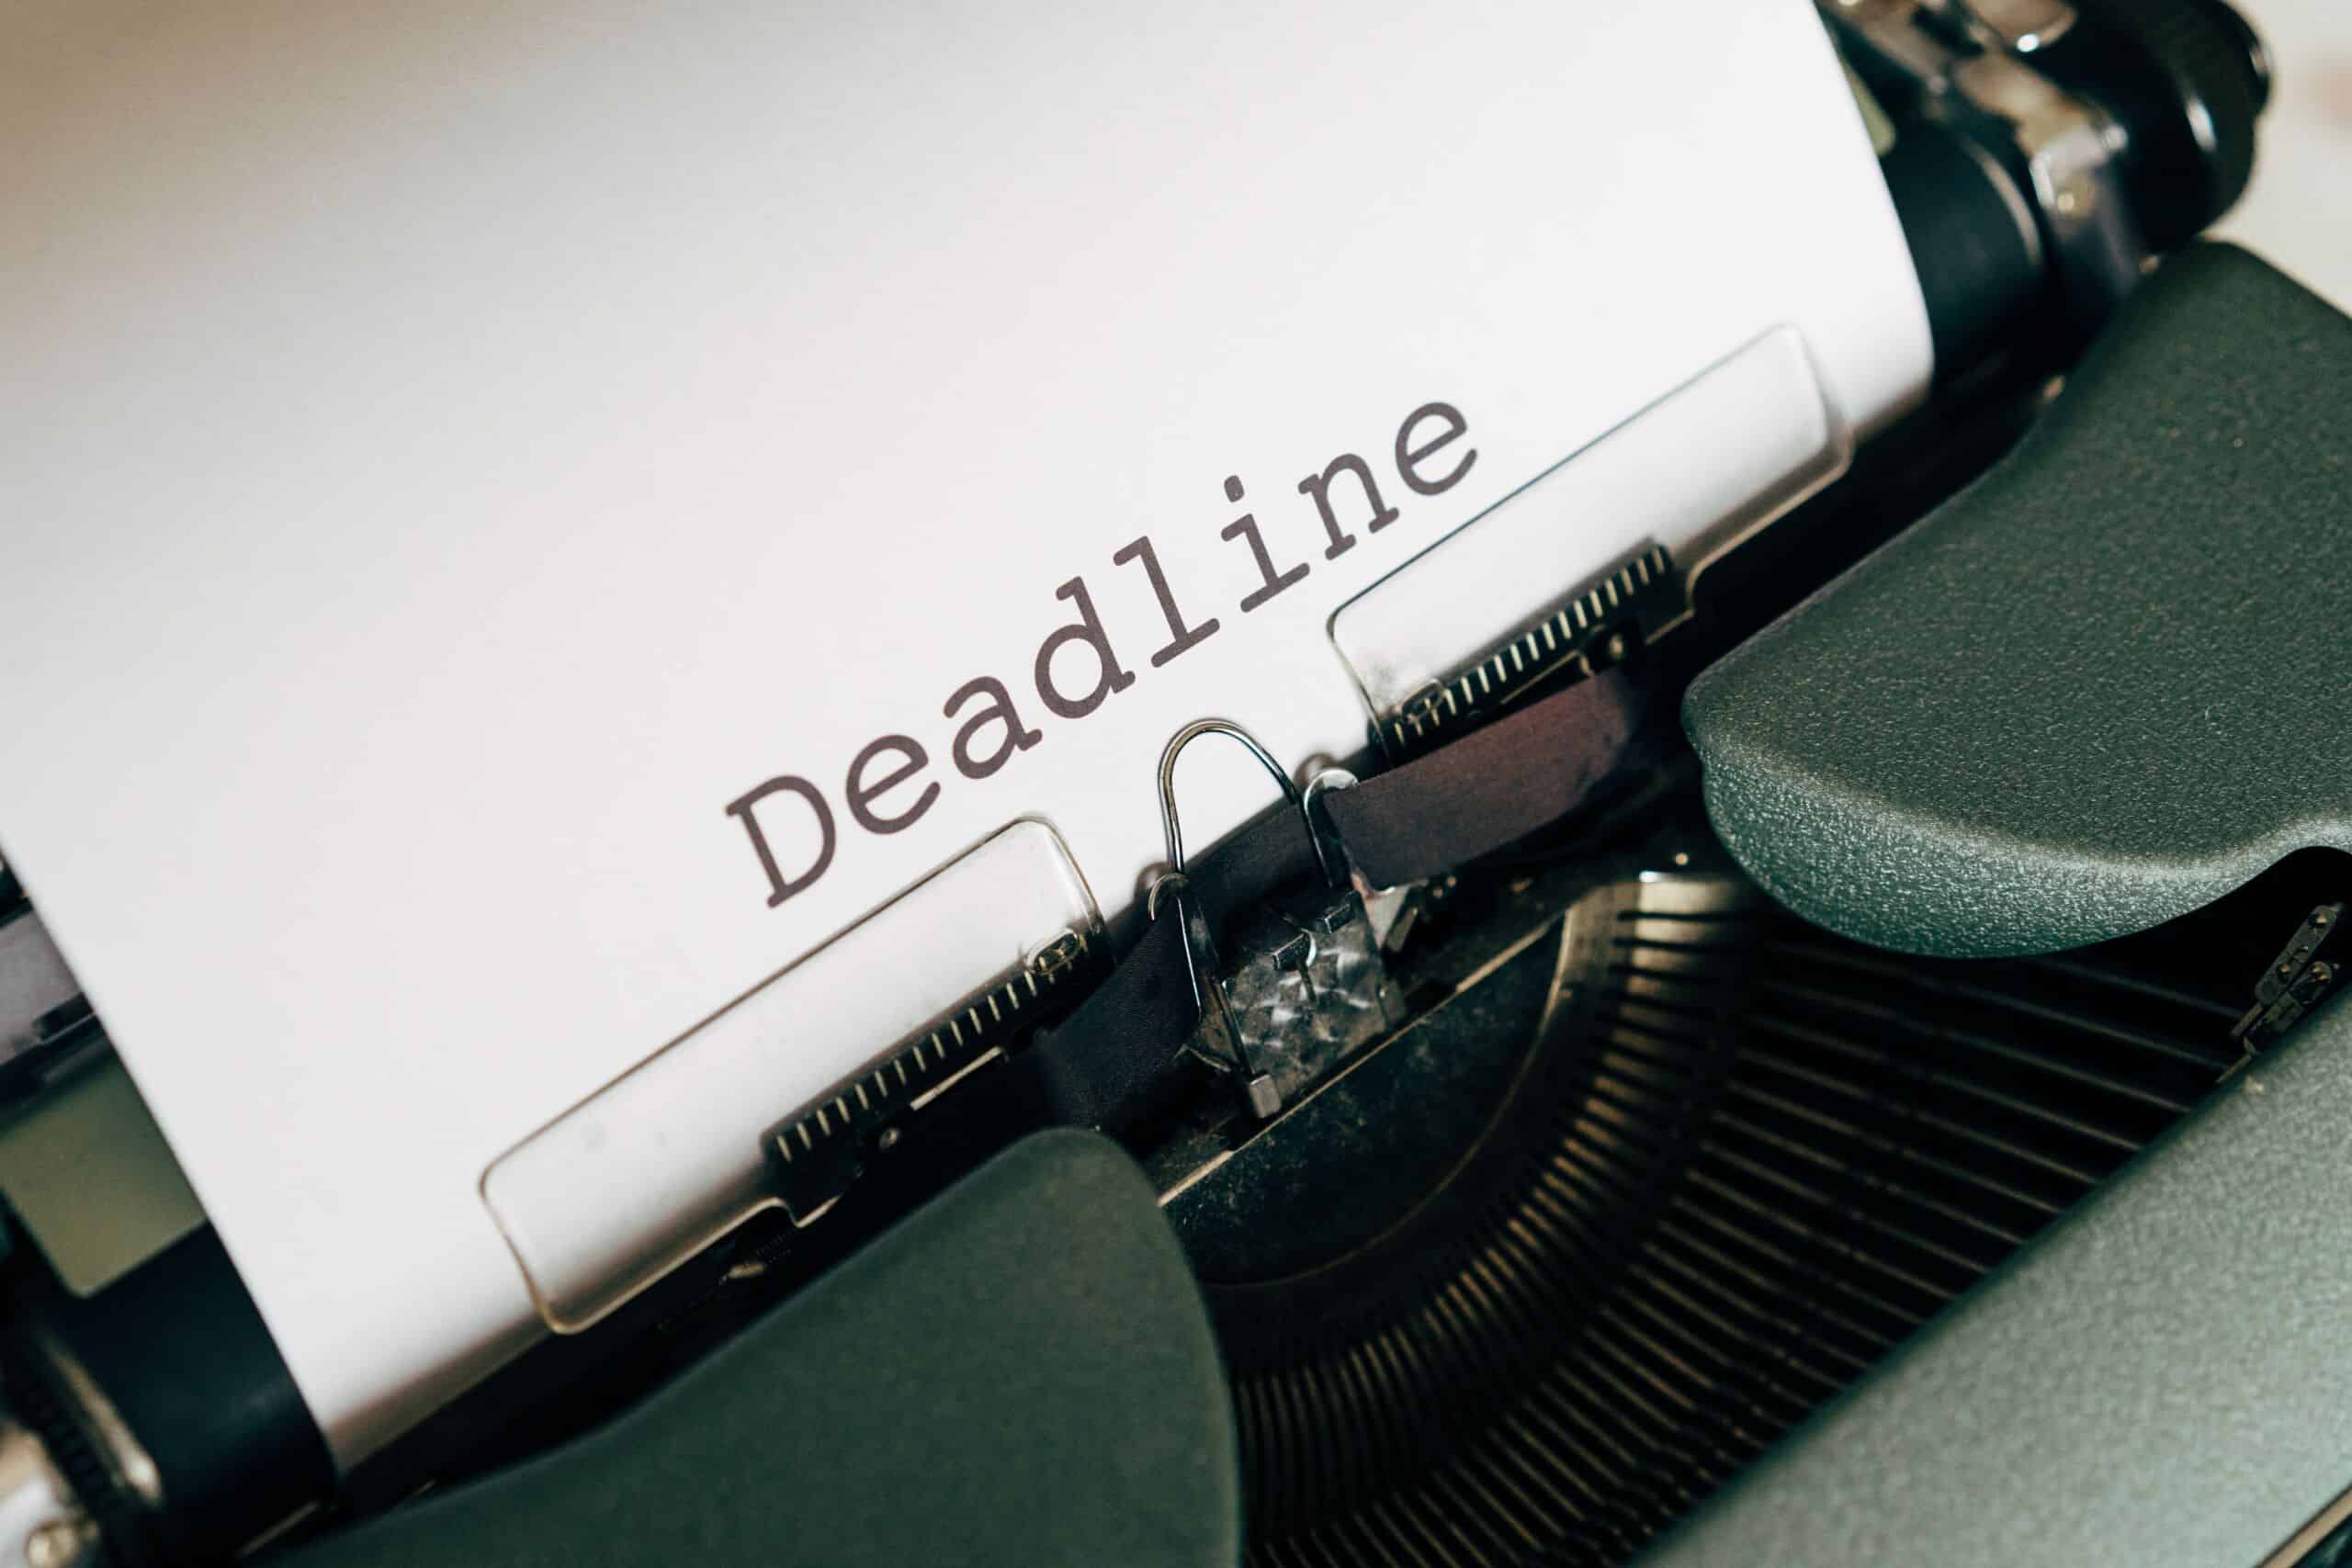 Ein Blatt in einer Schreibmaschine mit dem Begriff Deadline